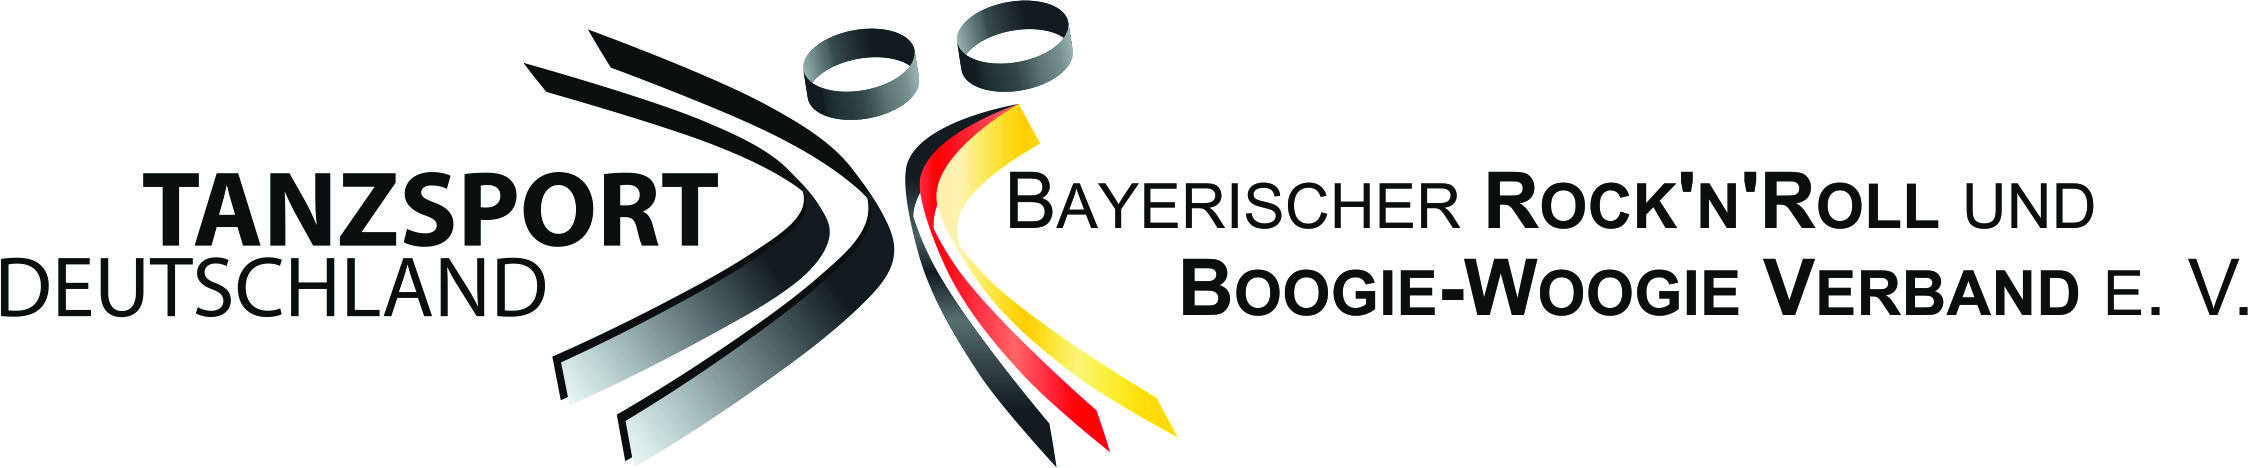 Bayerischer Rock`n`Roll und Boogie-Woogie Verband e.V